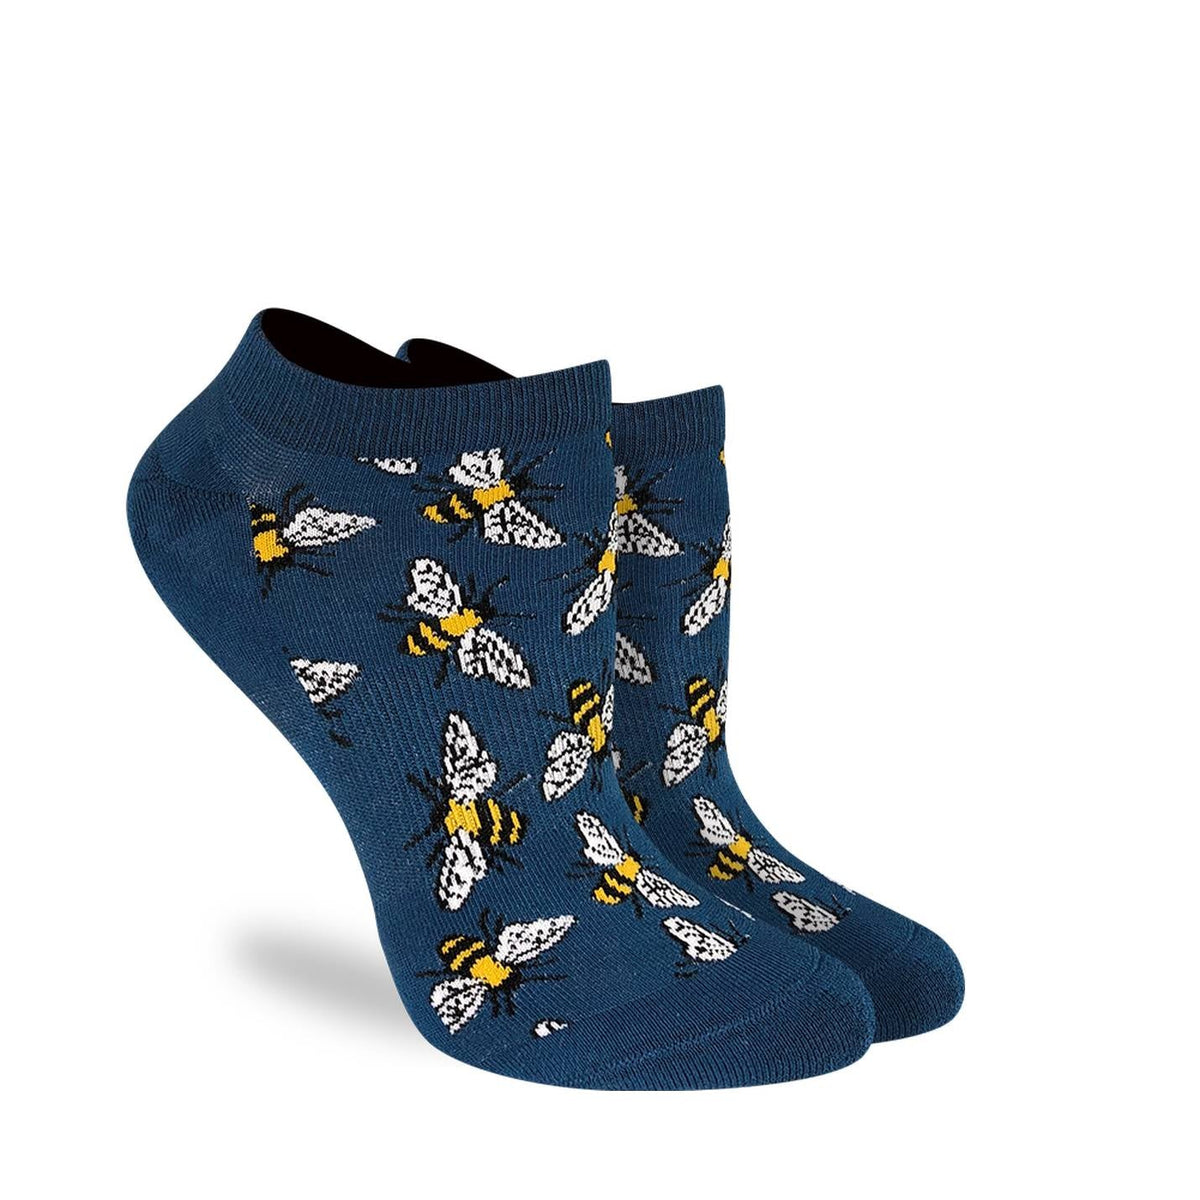 Women's Bees Ankle Socks